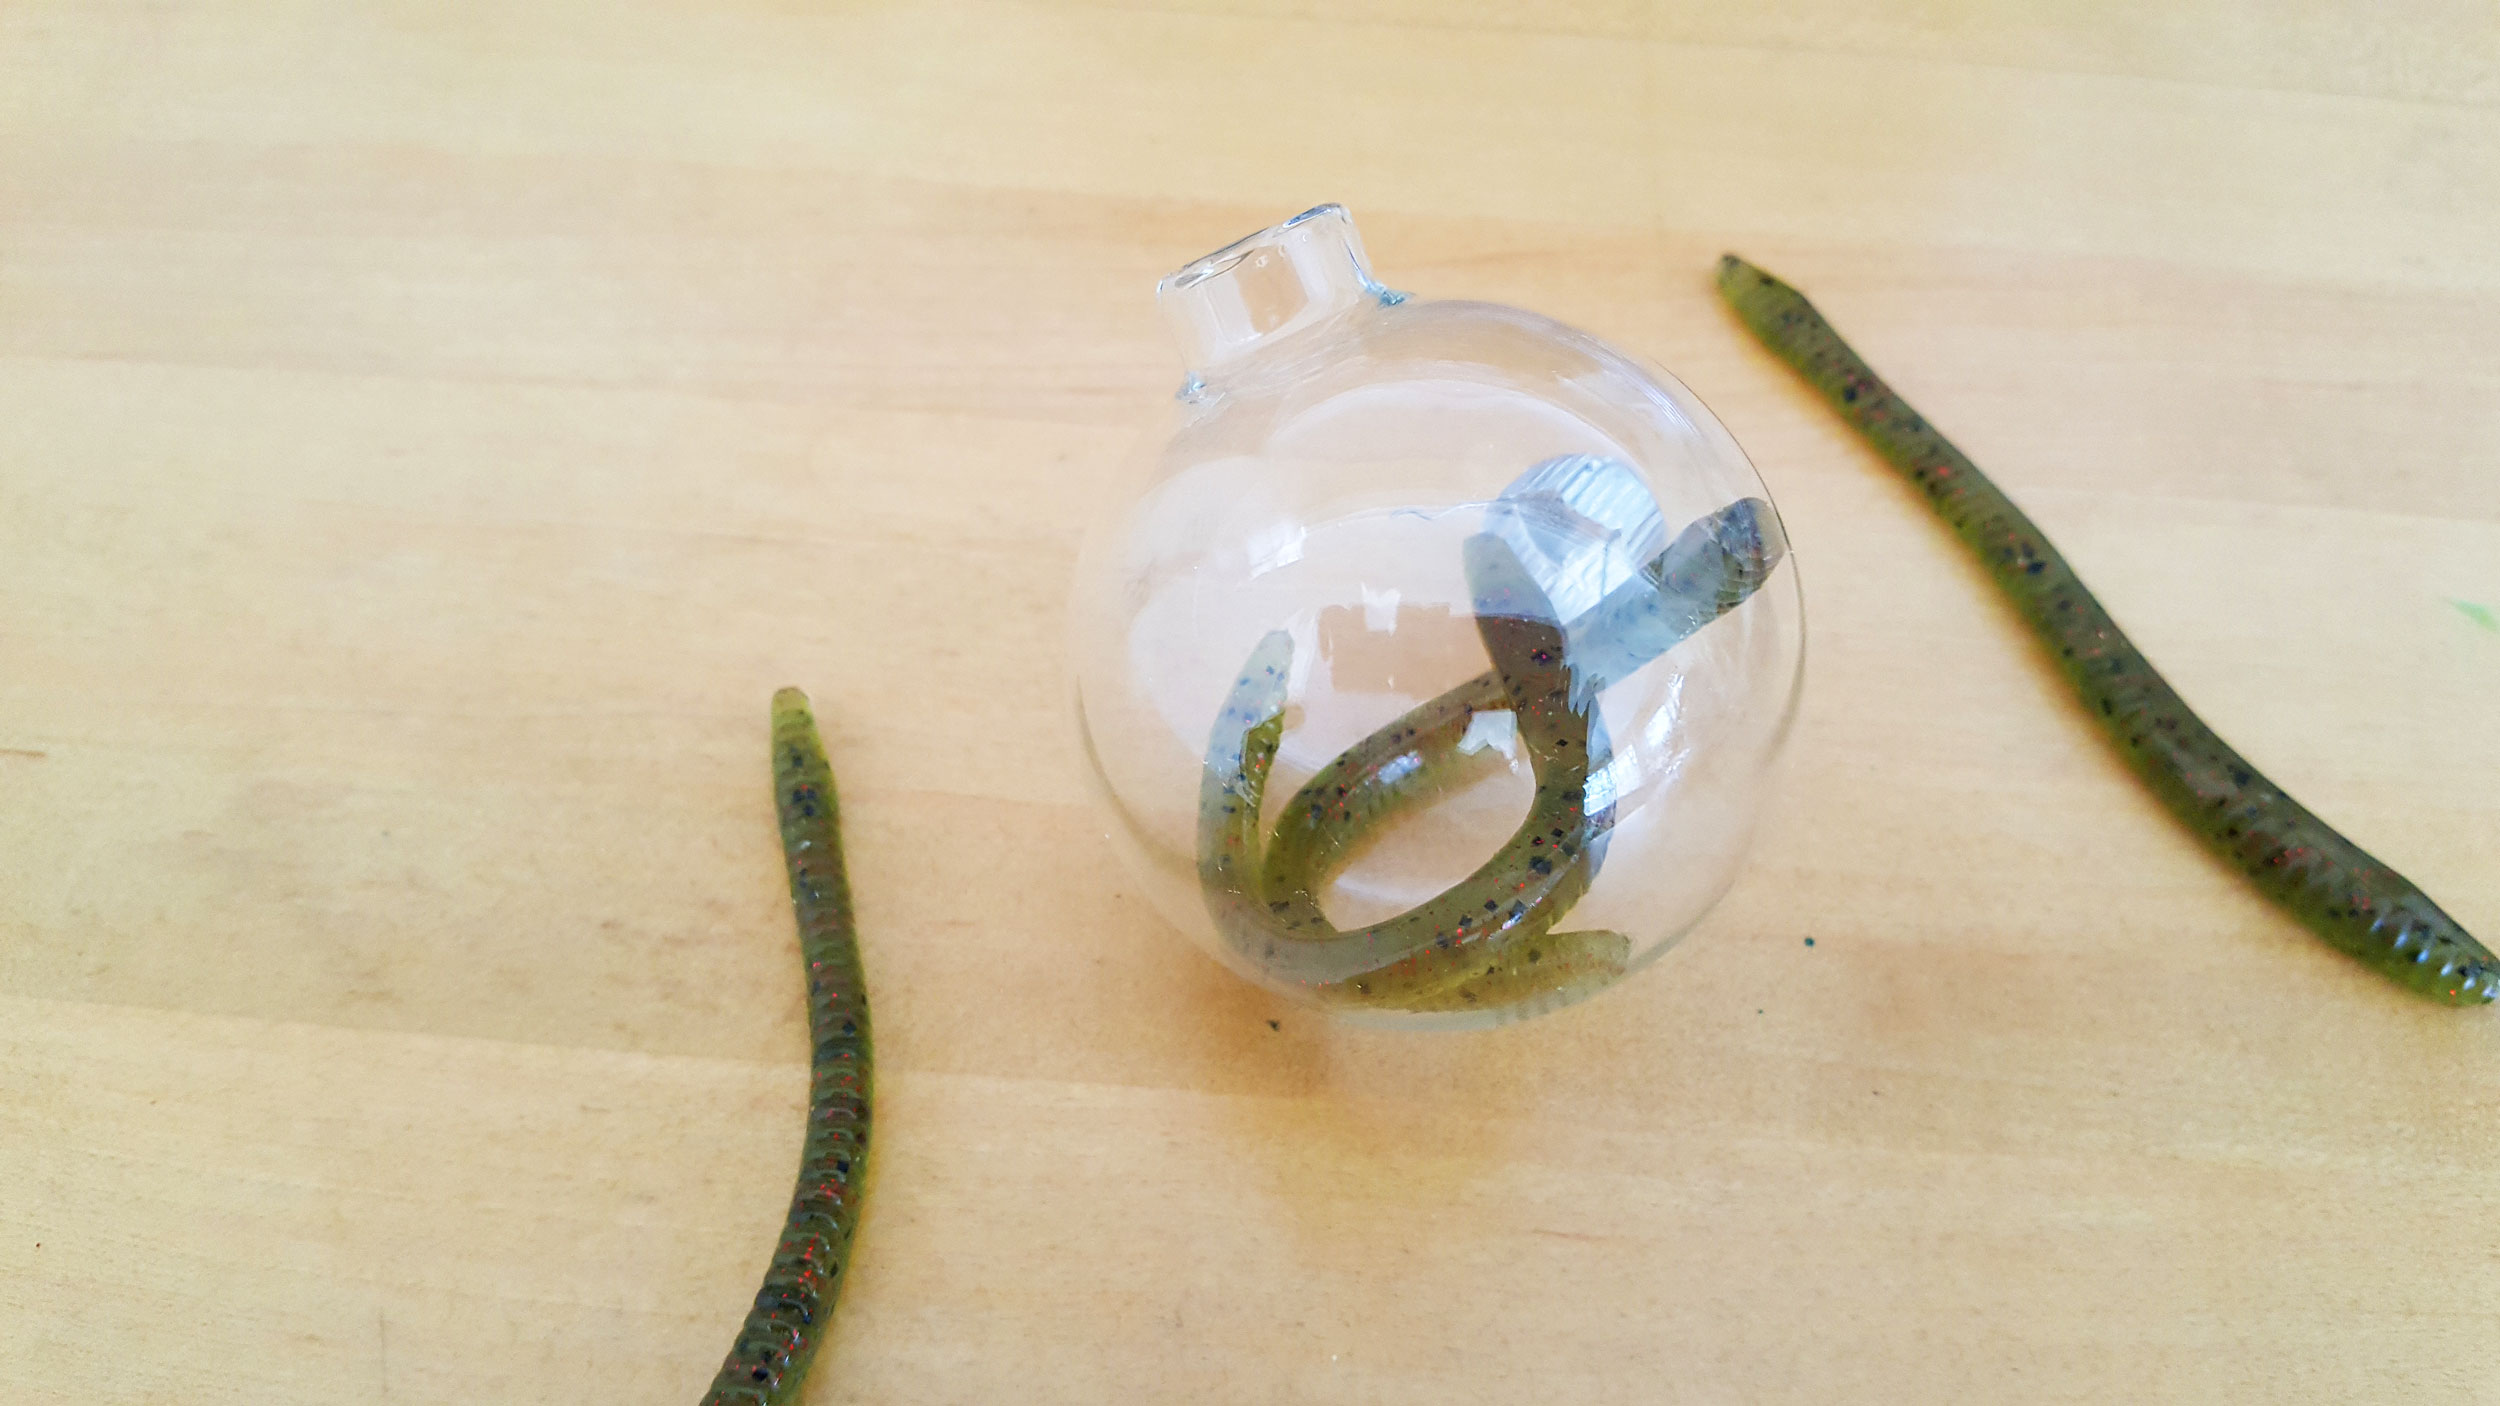 Rubber Worms in Glass Ball Ornament | OrnamentShop.com